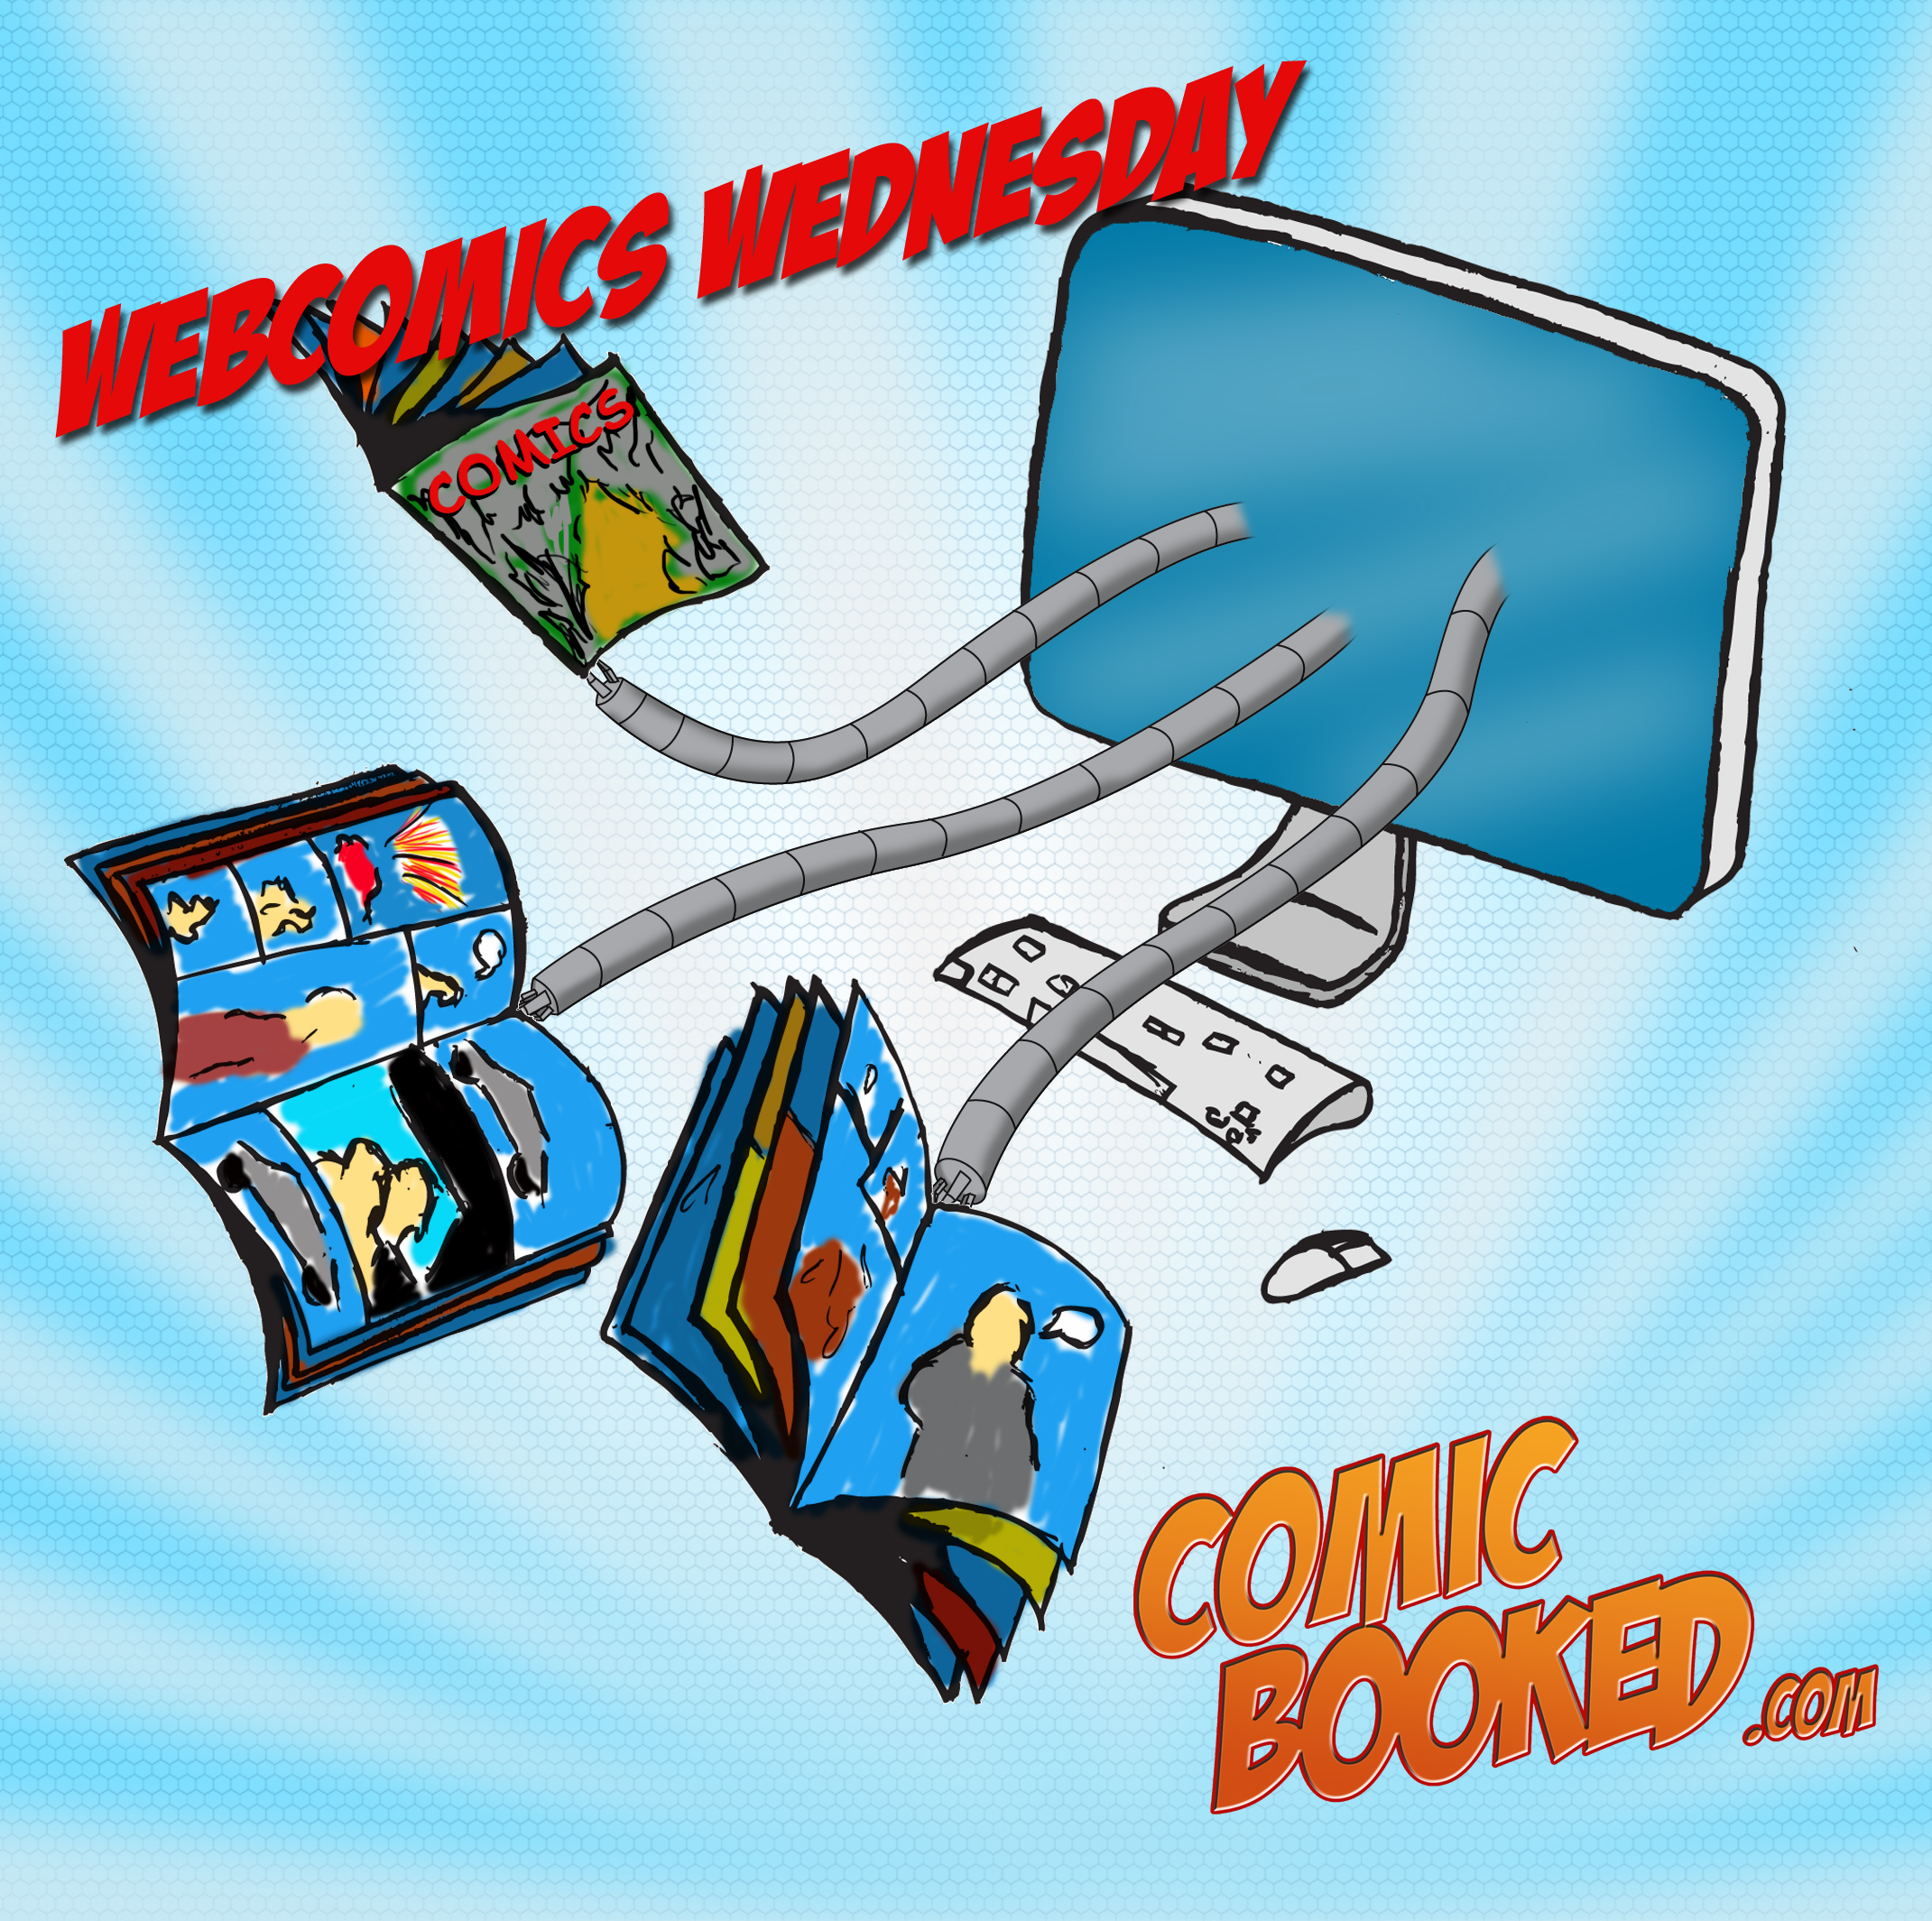 Webcomics Wednesday